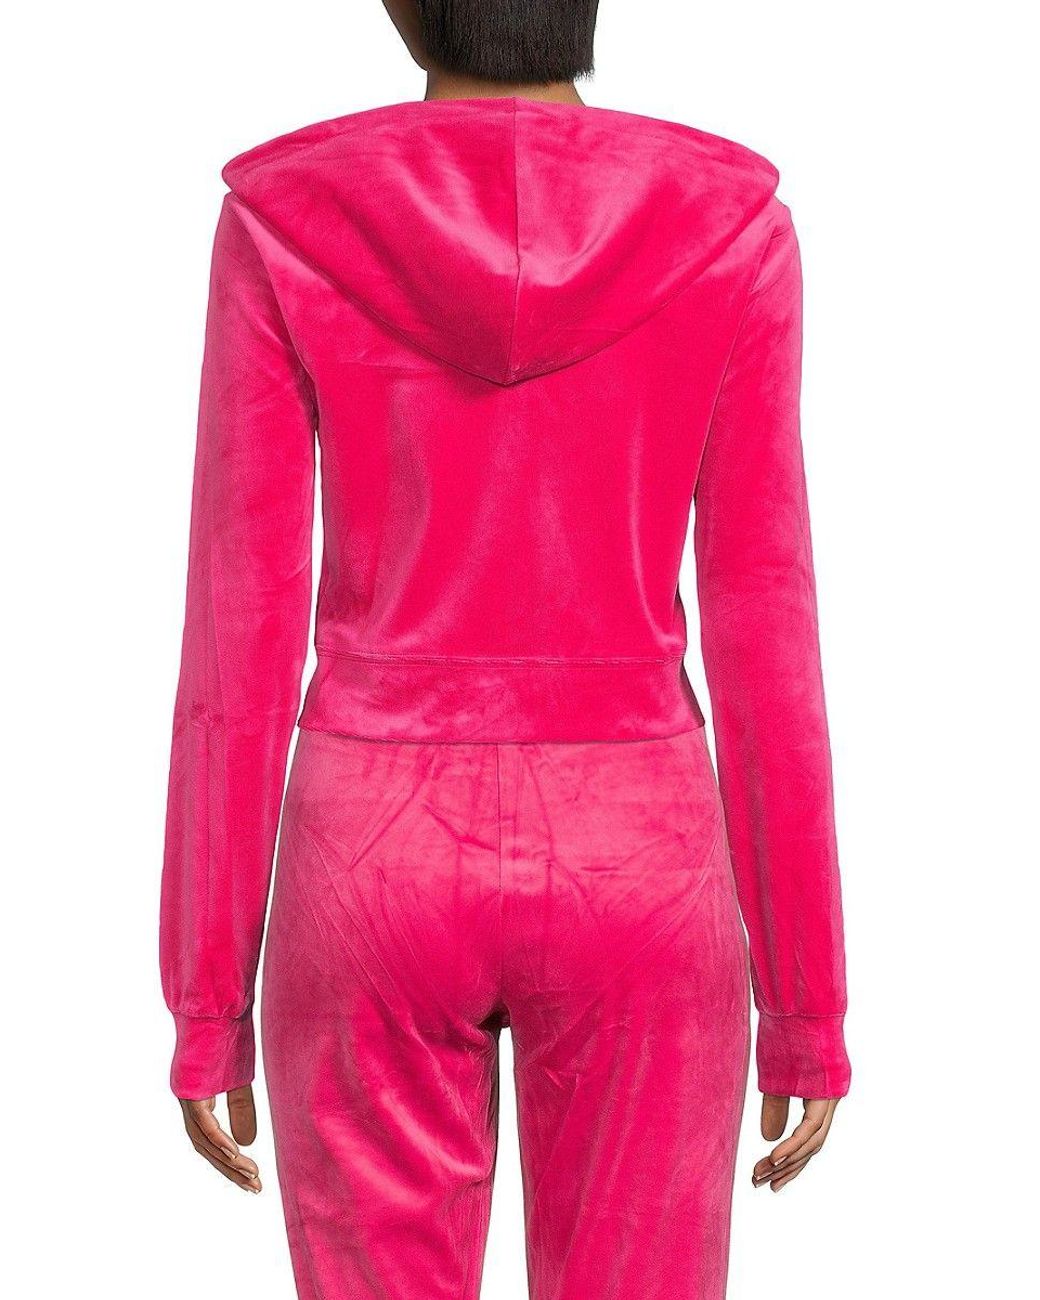 Juicy Couture Velvet Cropped Zip Up Hoodie in Pink | Lyst